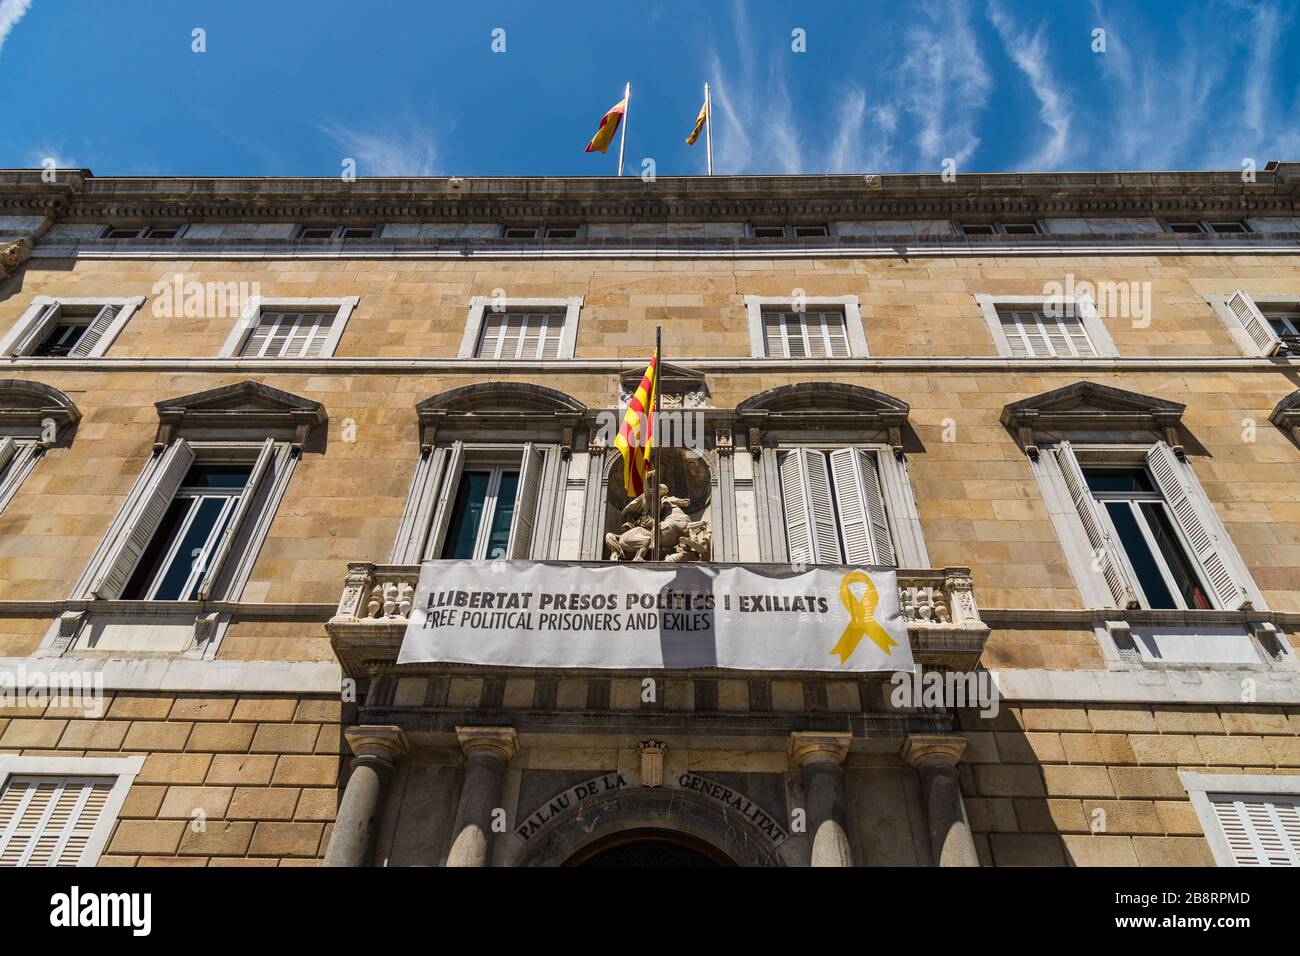 Barcelona, España - 1 de agosto de 2019: Edificio administrativo en Barcelona Foto de stock